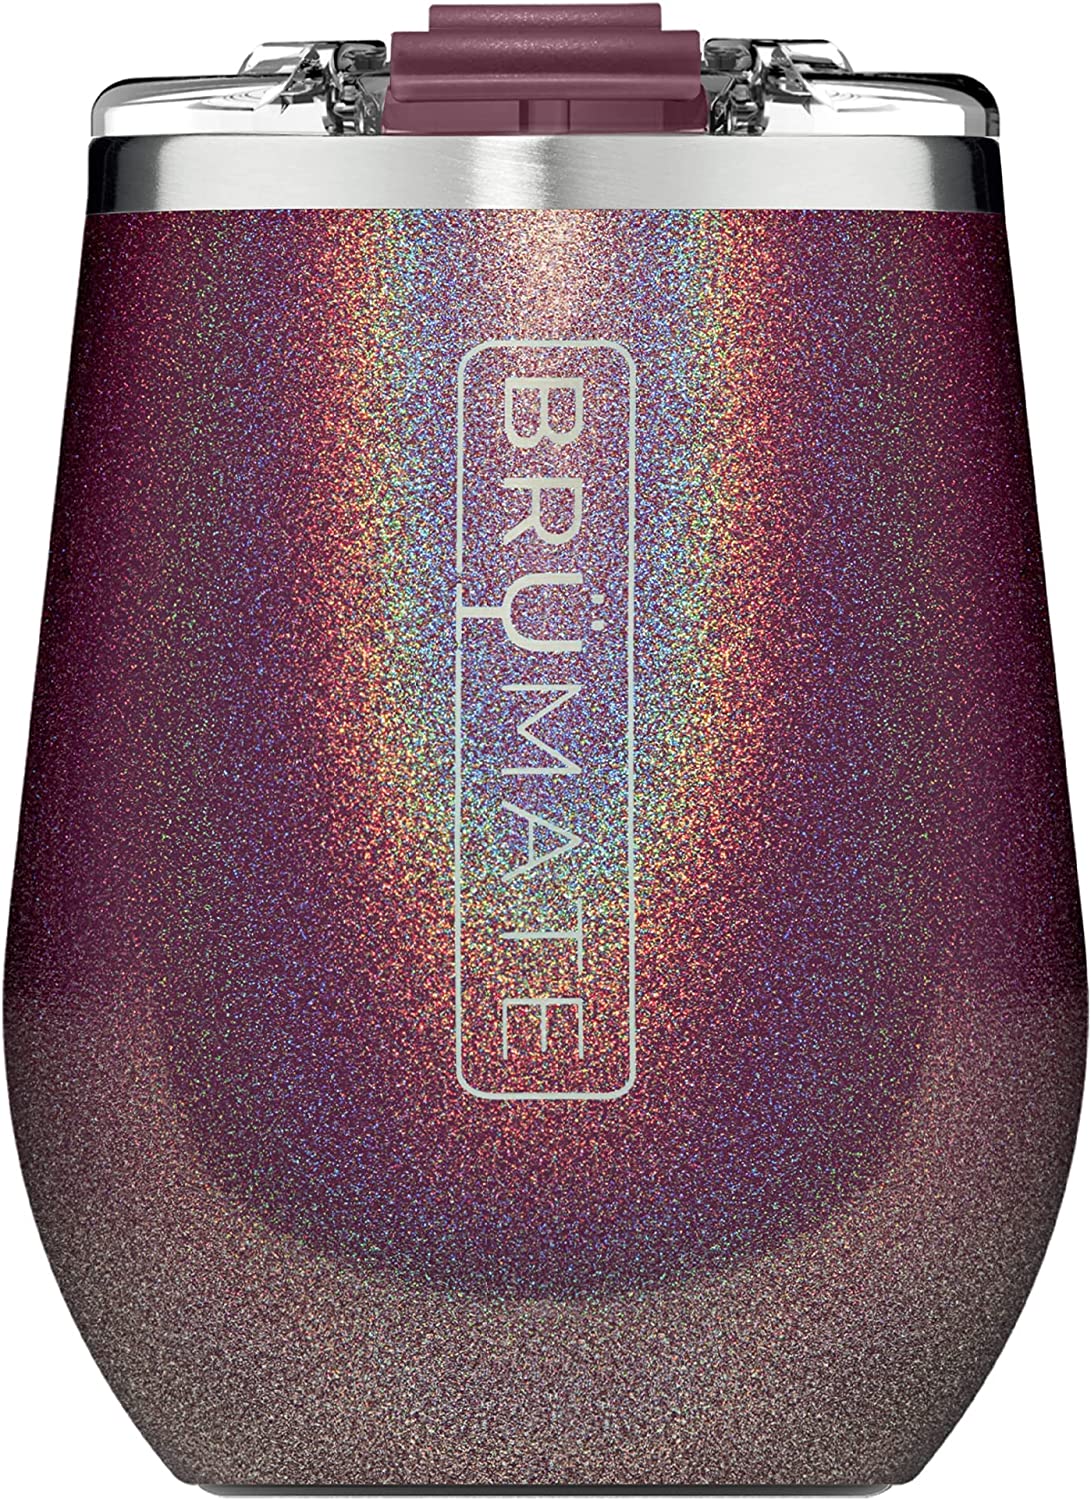 Brumate Uncorkd XL 14oz Wine Tumbler - Glitter Merlot